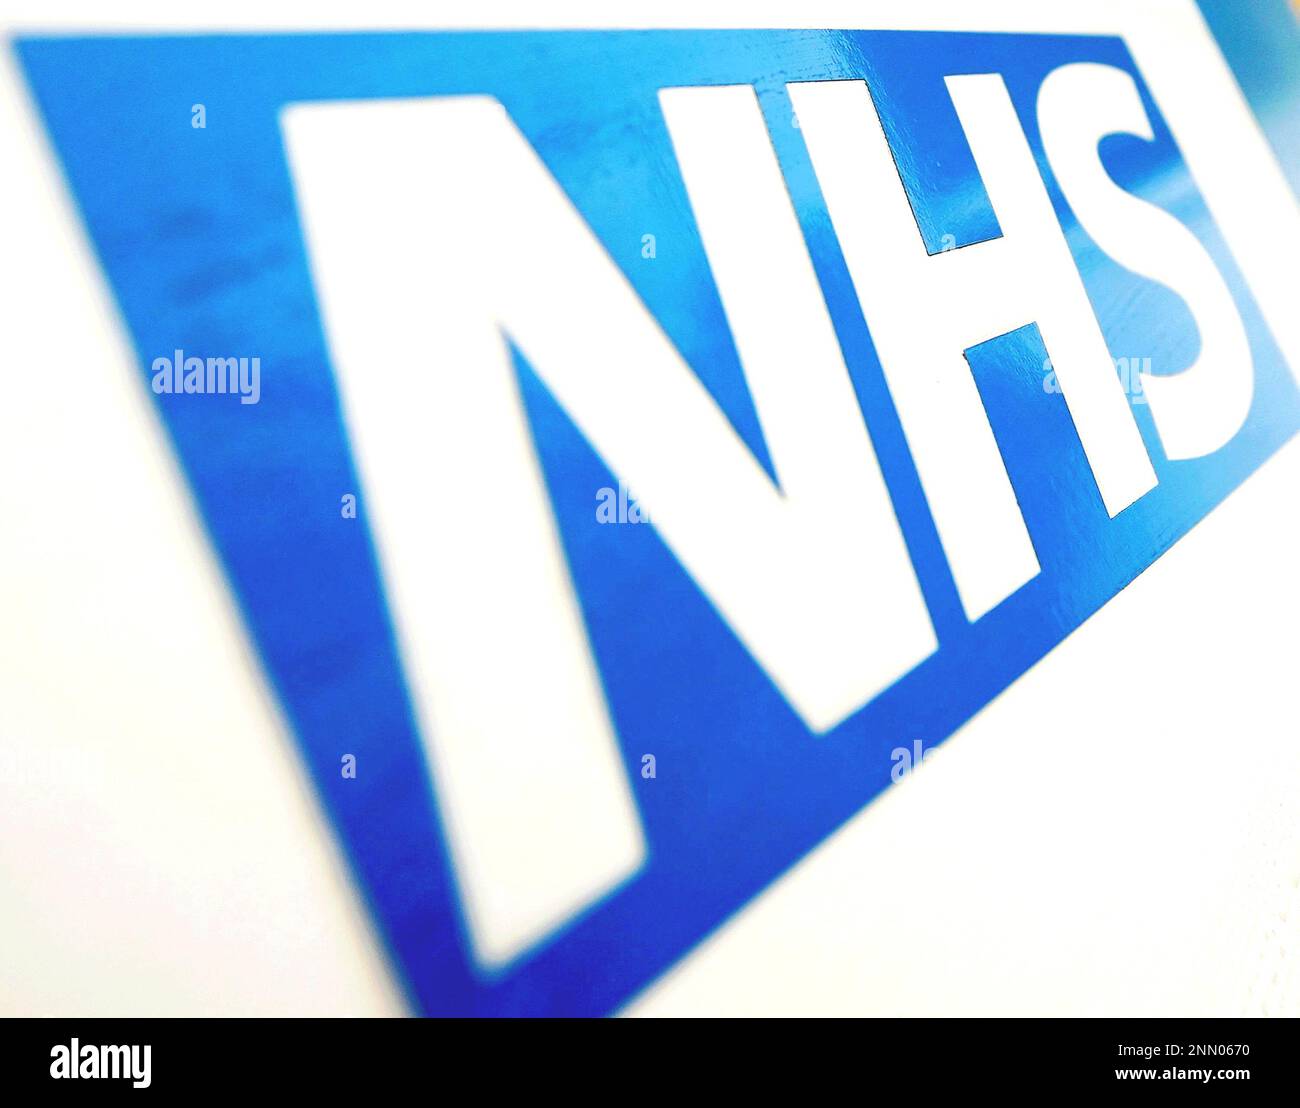 Photo du dossier datée du 06/11/10 du logo du NHS, des centaines de personnes se joindront samedi à une manifestation dans le cadre d'une campagne contre la privatisation du NHS. Banque D'Images